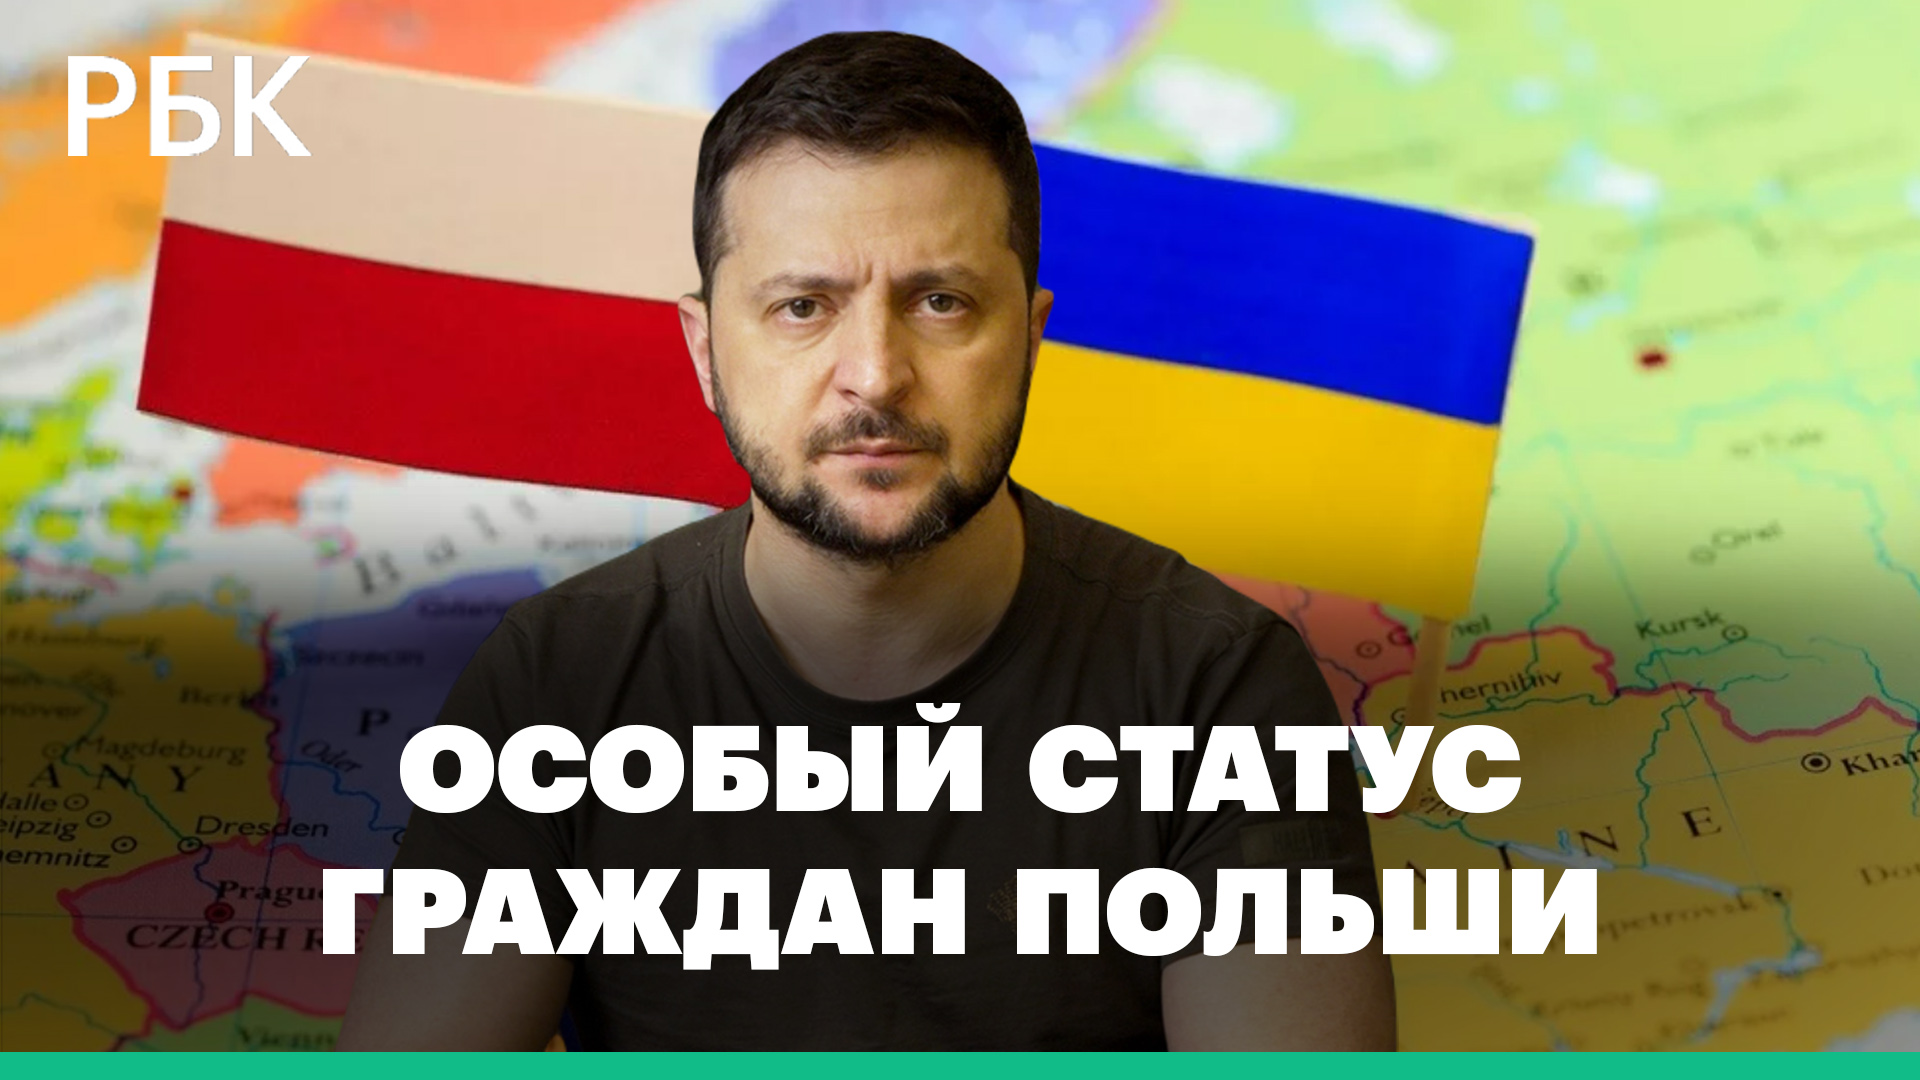 Что означает предложение Зеленского об особом правовом статусе граждан Польши на Украине